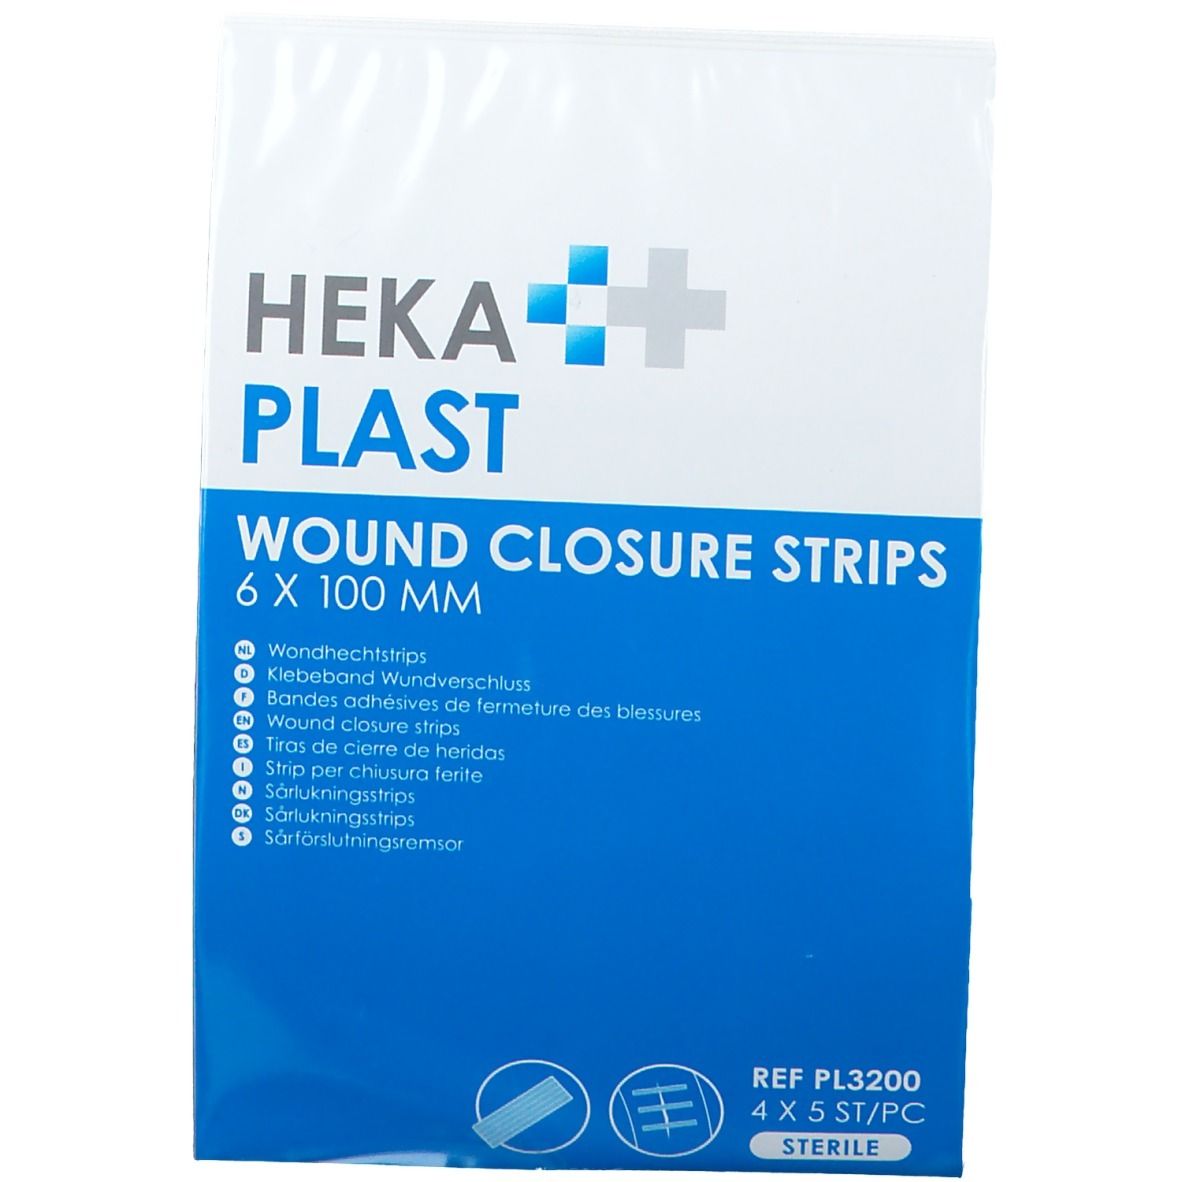 HEKA PLAST Bandes adhésive de fermeture des plaies 6 x 100 mm